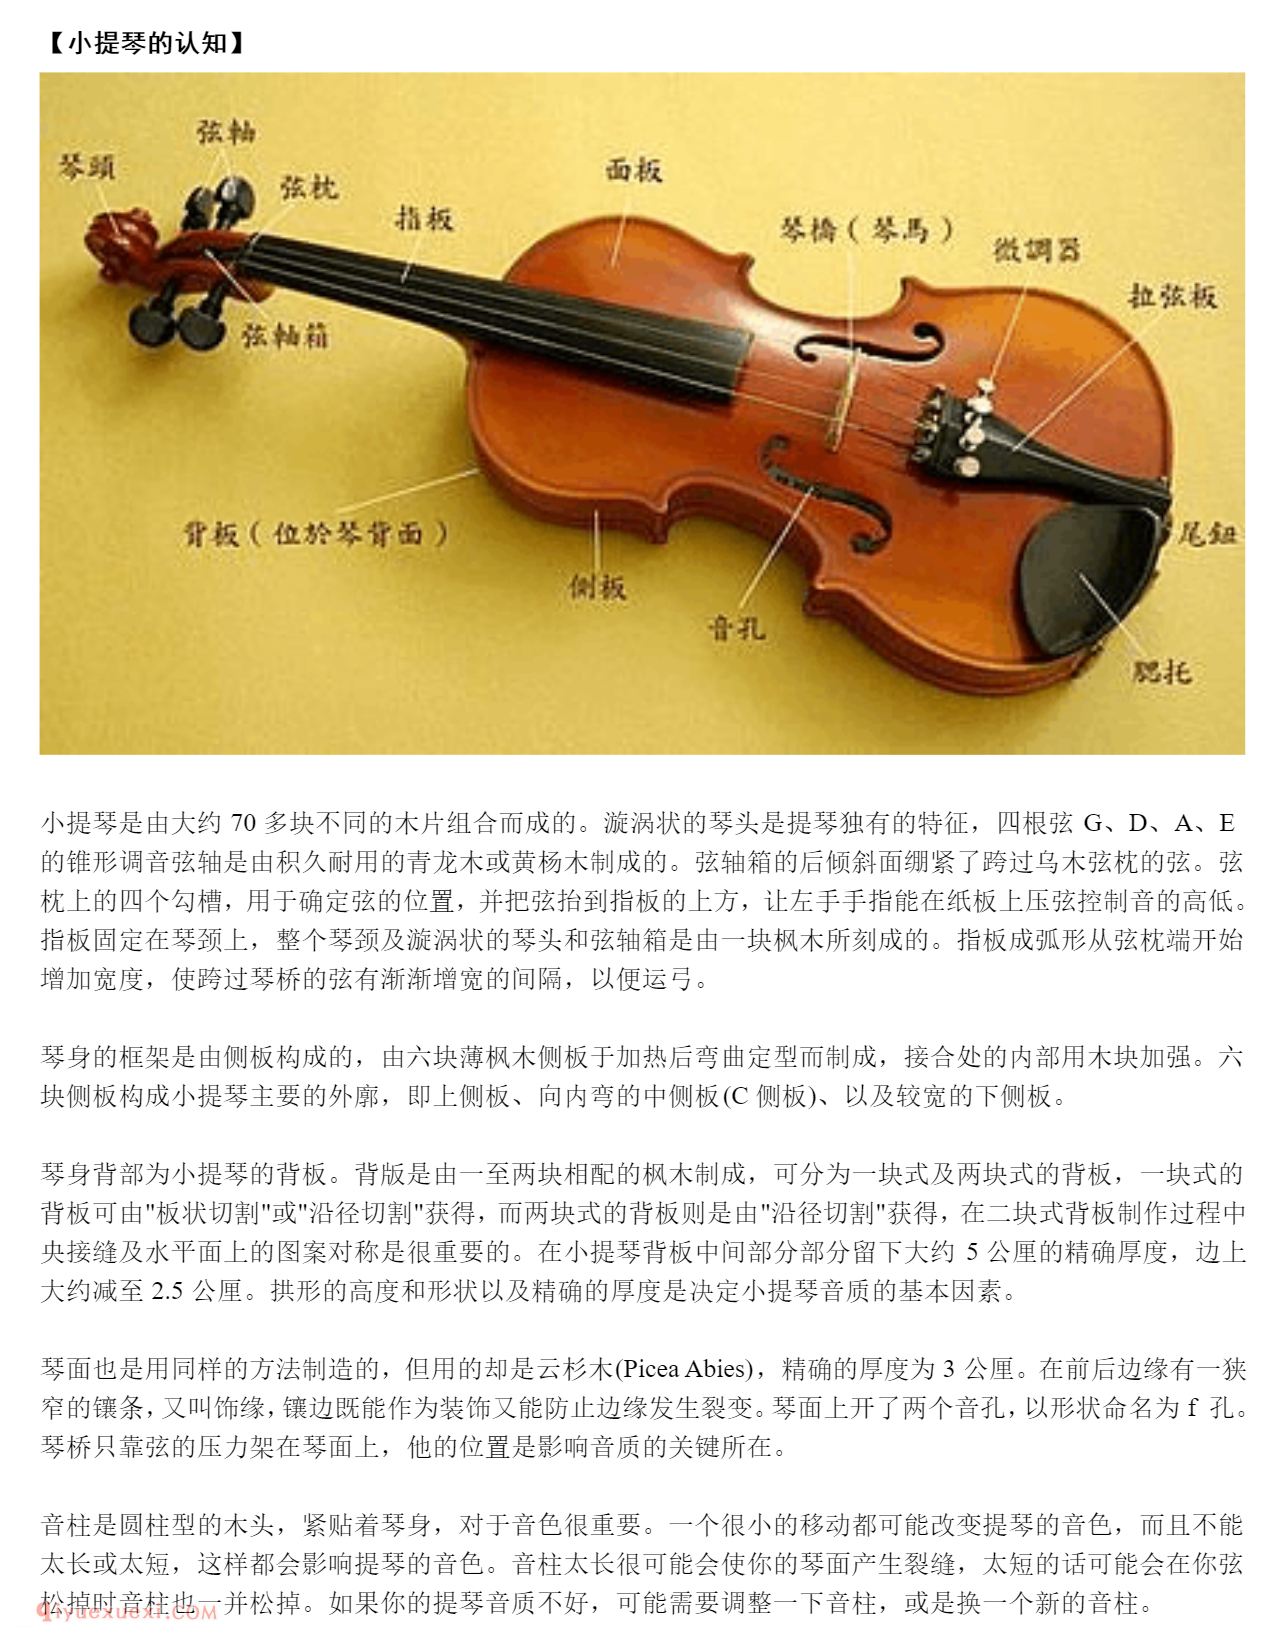 小提琴入门自学详细教程